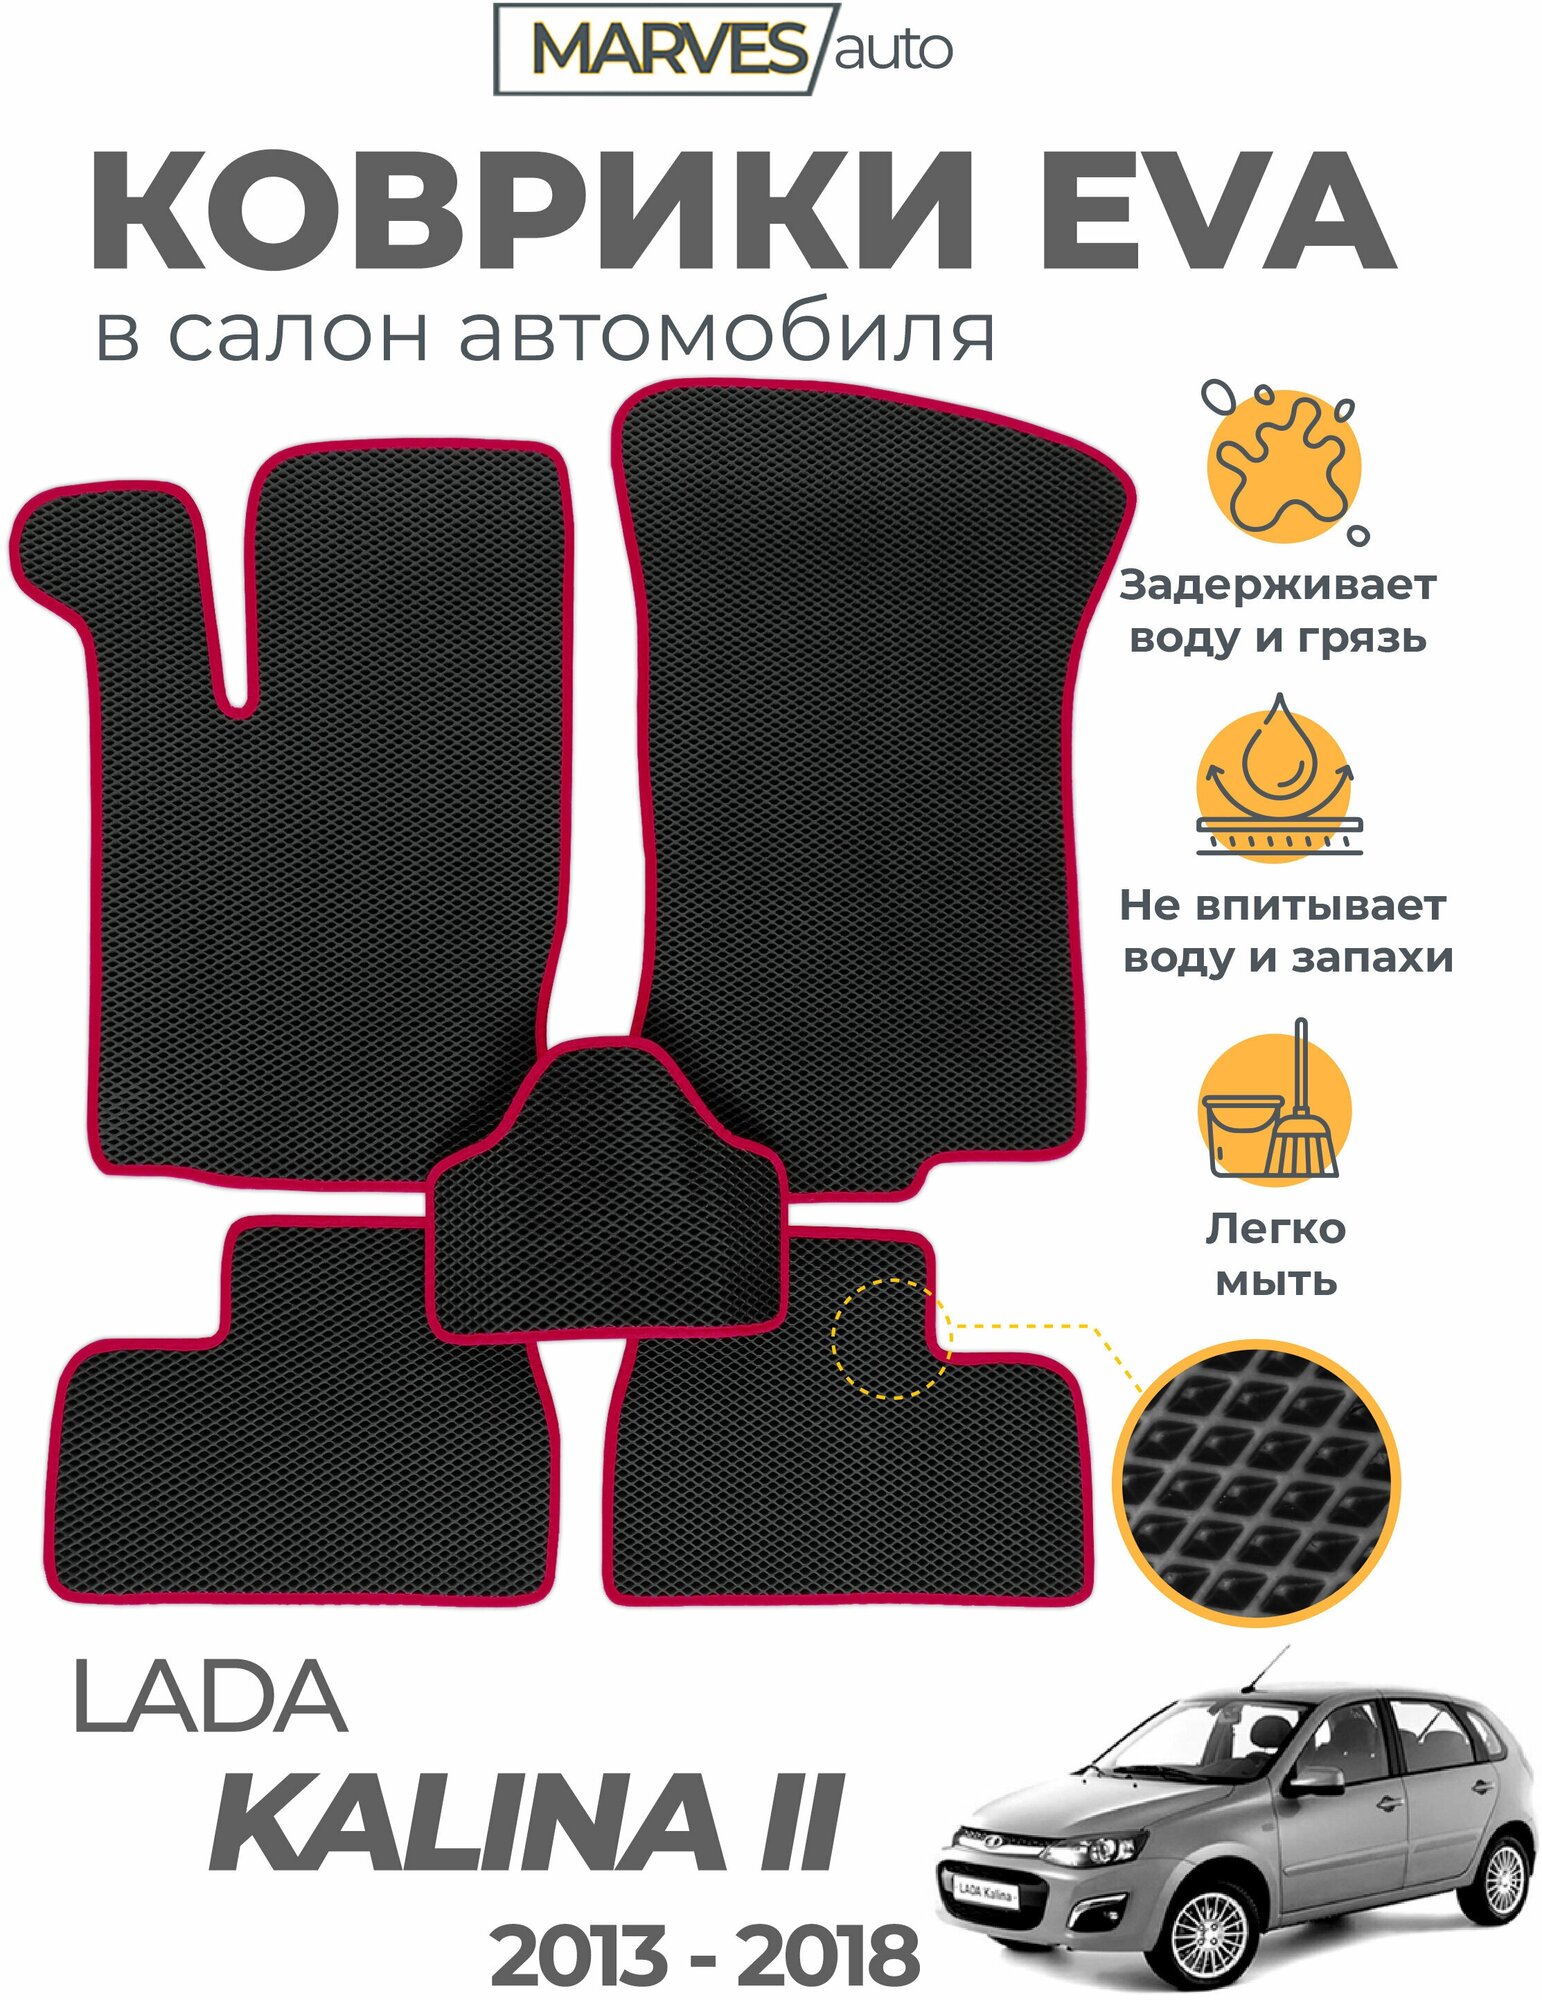 Коврики EVA (ЭВА, ЕВА) в салон автомобиля Лада Калина II 2014-2018, ВАЗ-2192, 2194, комплект 5 шт, черный ромб/бордовый кант